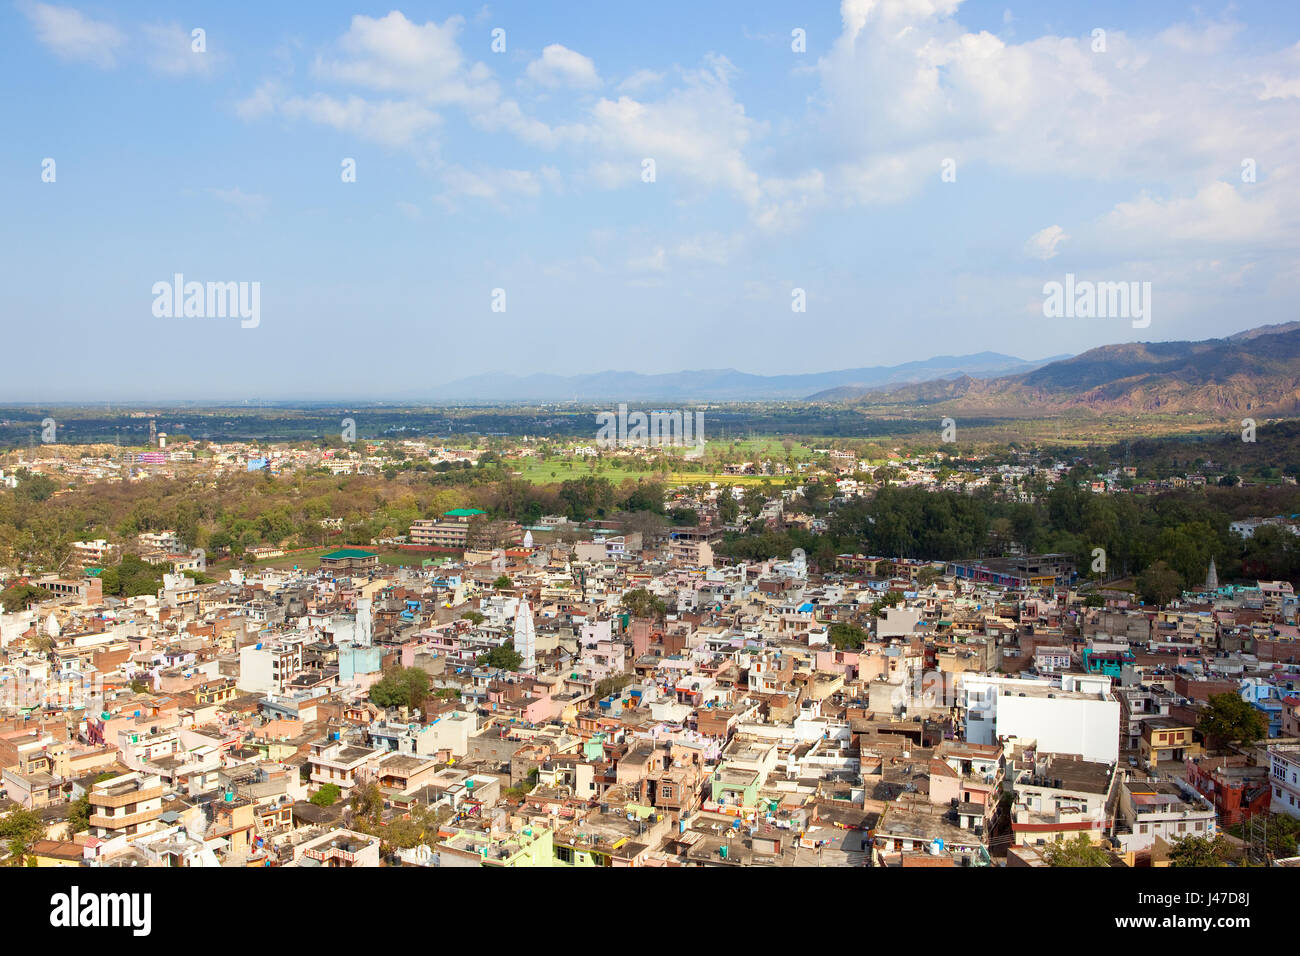 Édifices et de l'aménagement du territoire autour de nalagarh city l'Inde du nord avec les montagnes sous un ciel nuageux bleu au printemps Banque D'Images